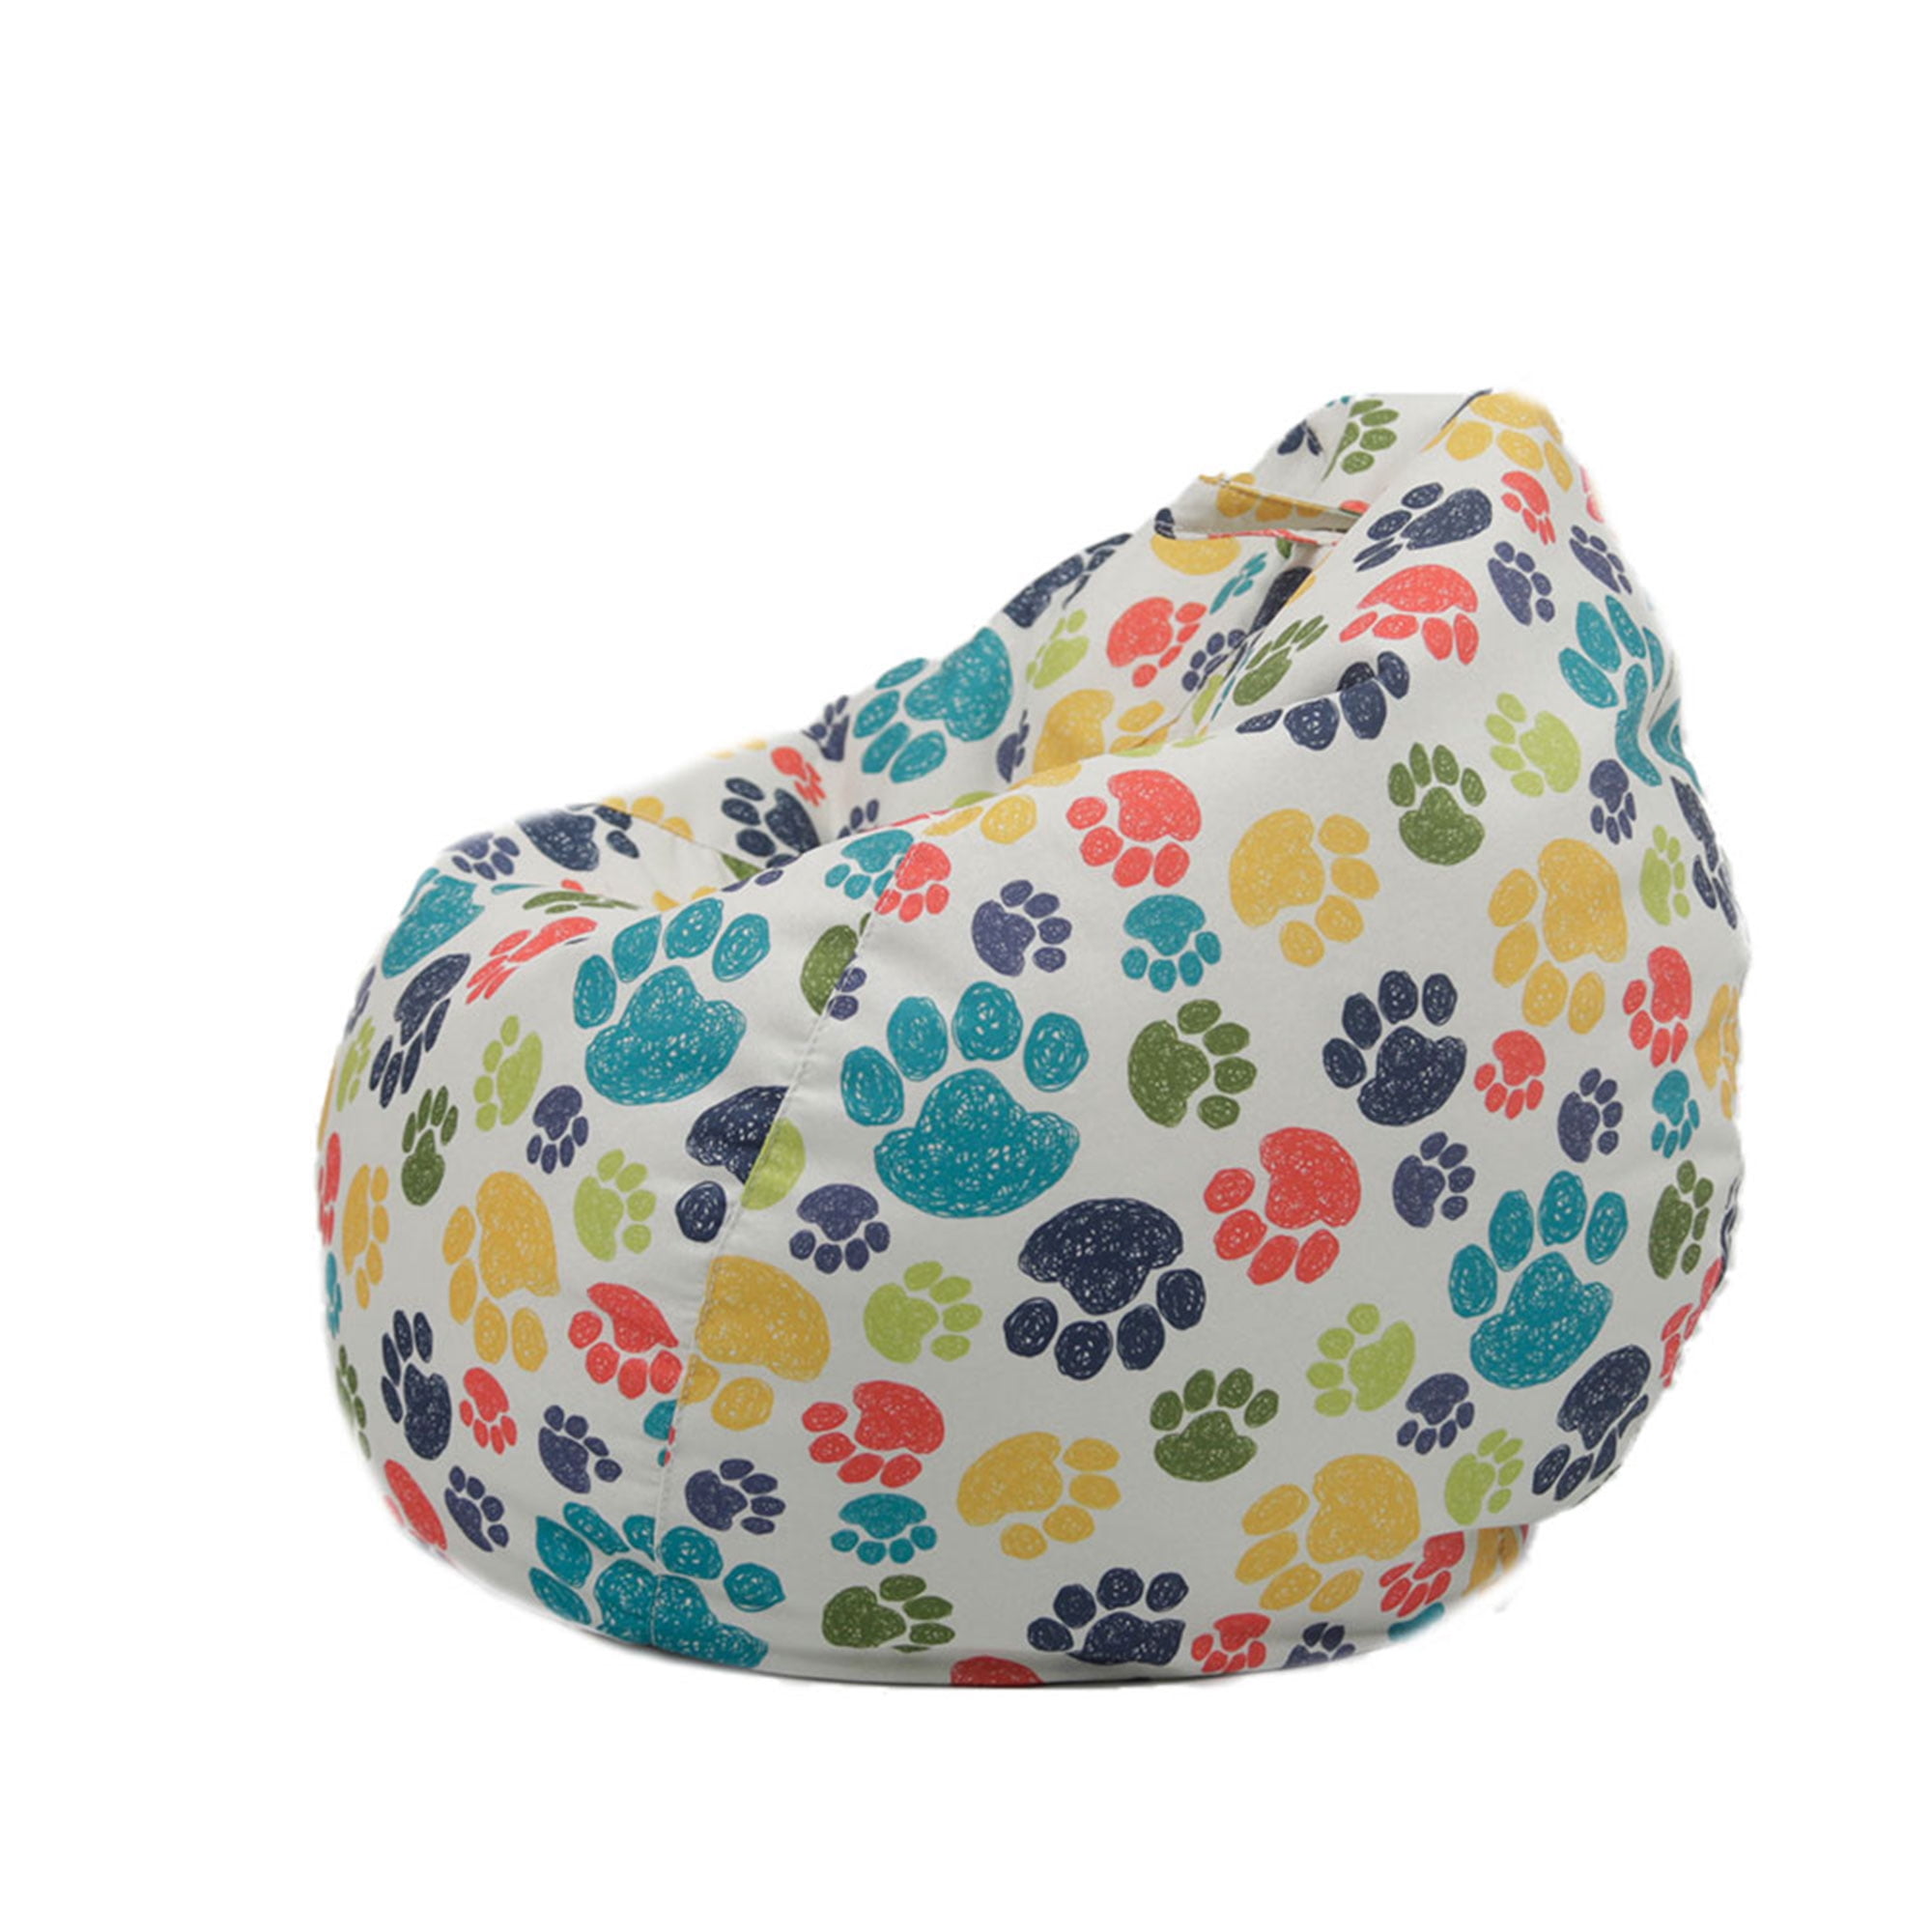 Pudcoco Cartoon Animal Print Sofa Cover Soft Stuffable Bean Bag Chair Cover  | Walmart Canada